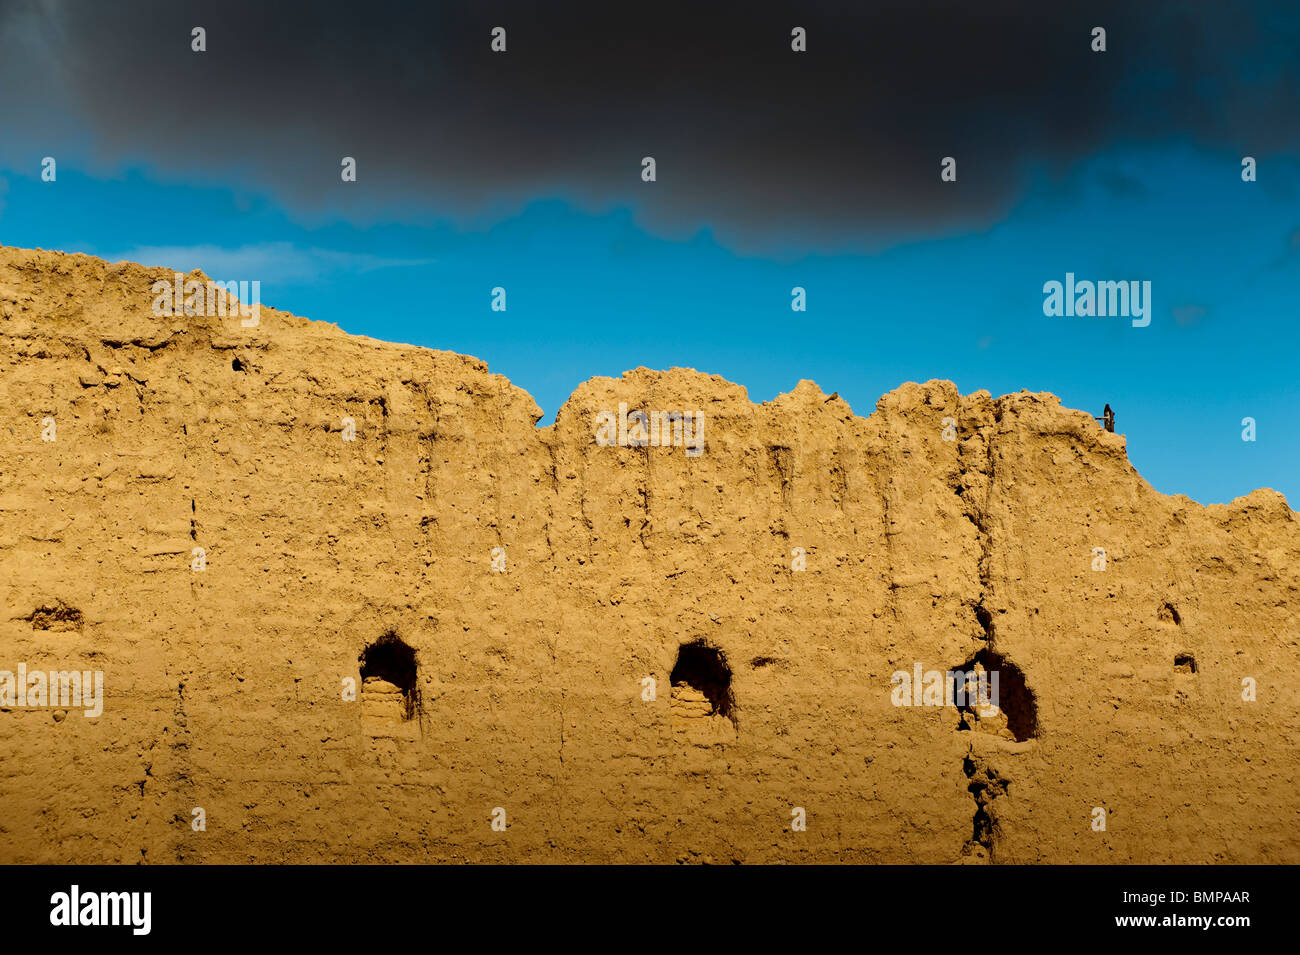 Ruine de fortifications en briques de boue, Figuig, province de Figuig, région orientale, le Maroc. Banque D'Images